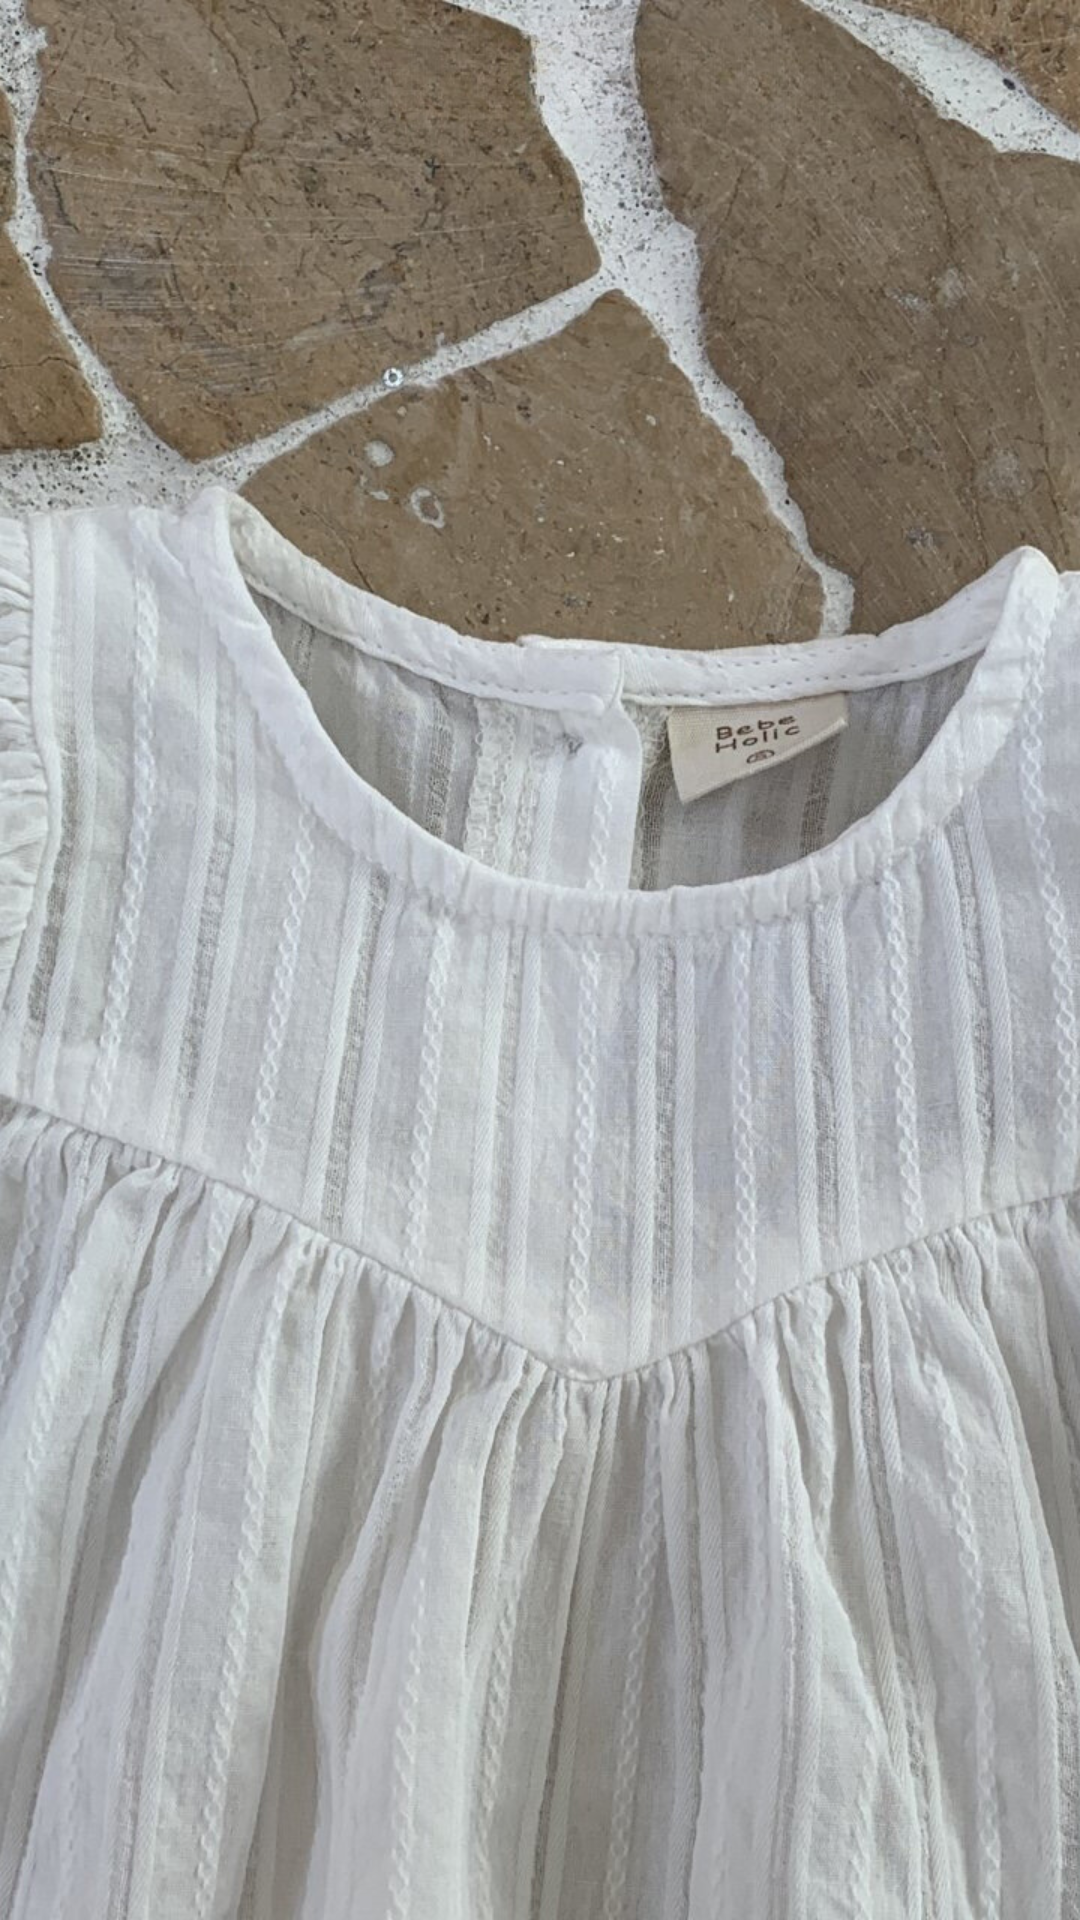 Nahaufnahme einer weißen, plissierten Raoul-Bluse mit Rüschendetails und einem Etikett mit der Marke „Bebe Holic“ auf einem strukturierten Hintergrund.